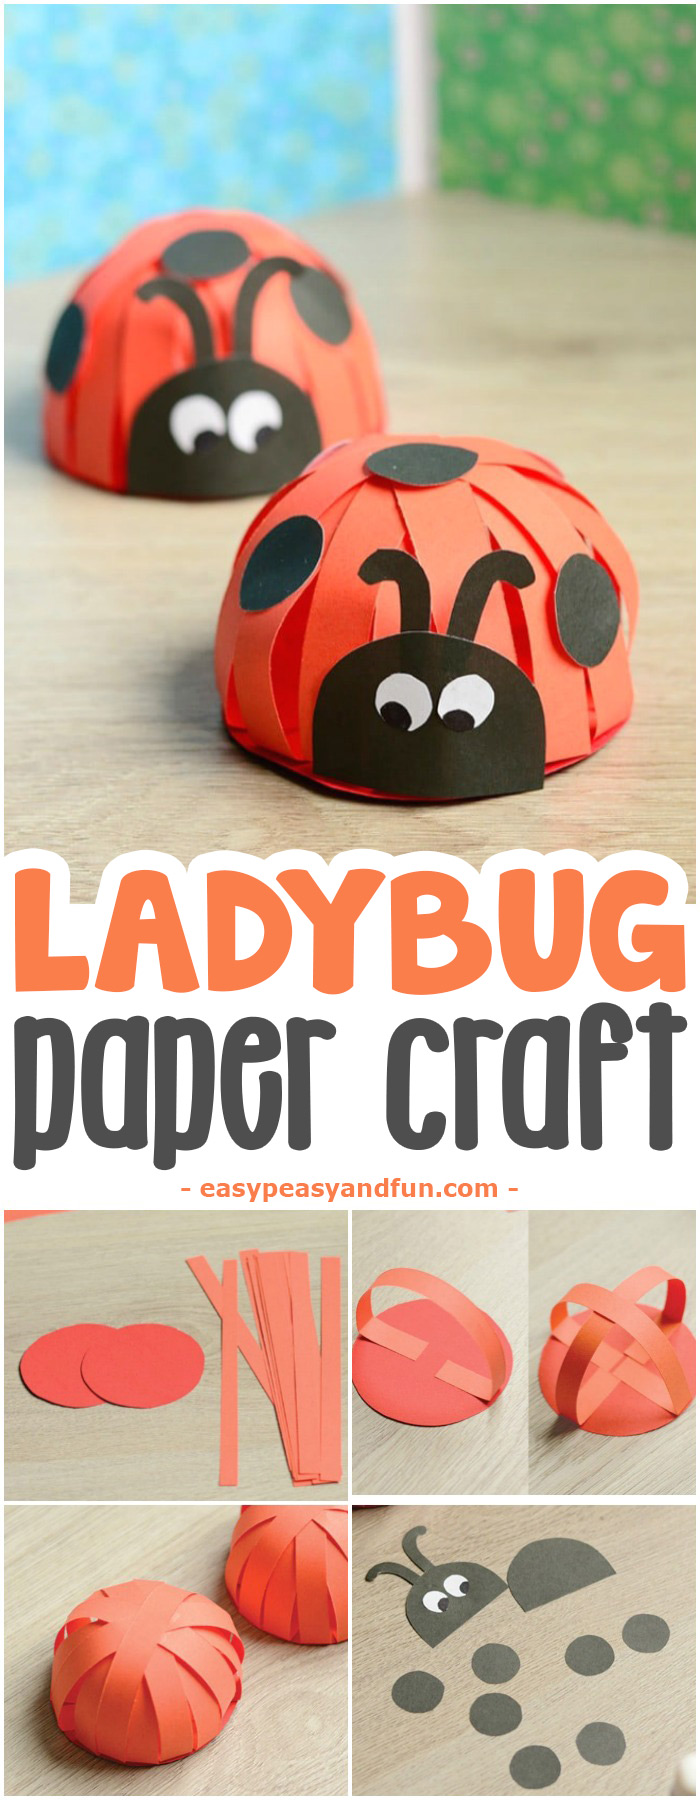 Adorable Paper Ladybug Craft #craftsforkids #activitiesforkids #Springcrafts